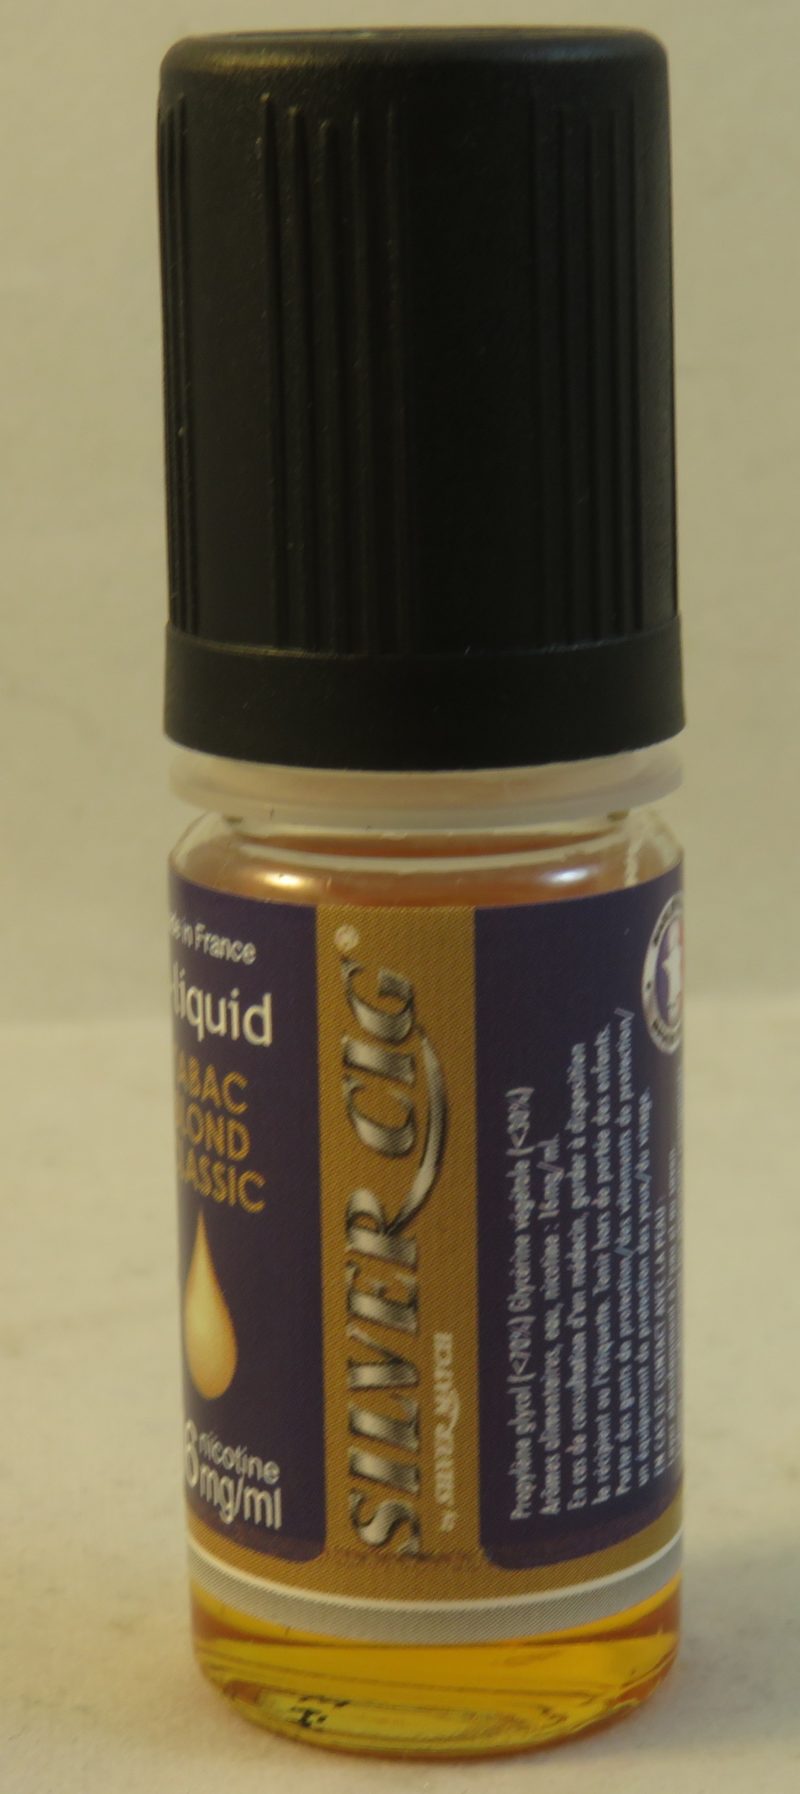 E-liquide Silver cig fraise 0mg de nicotine